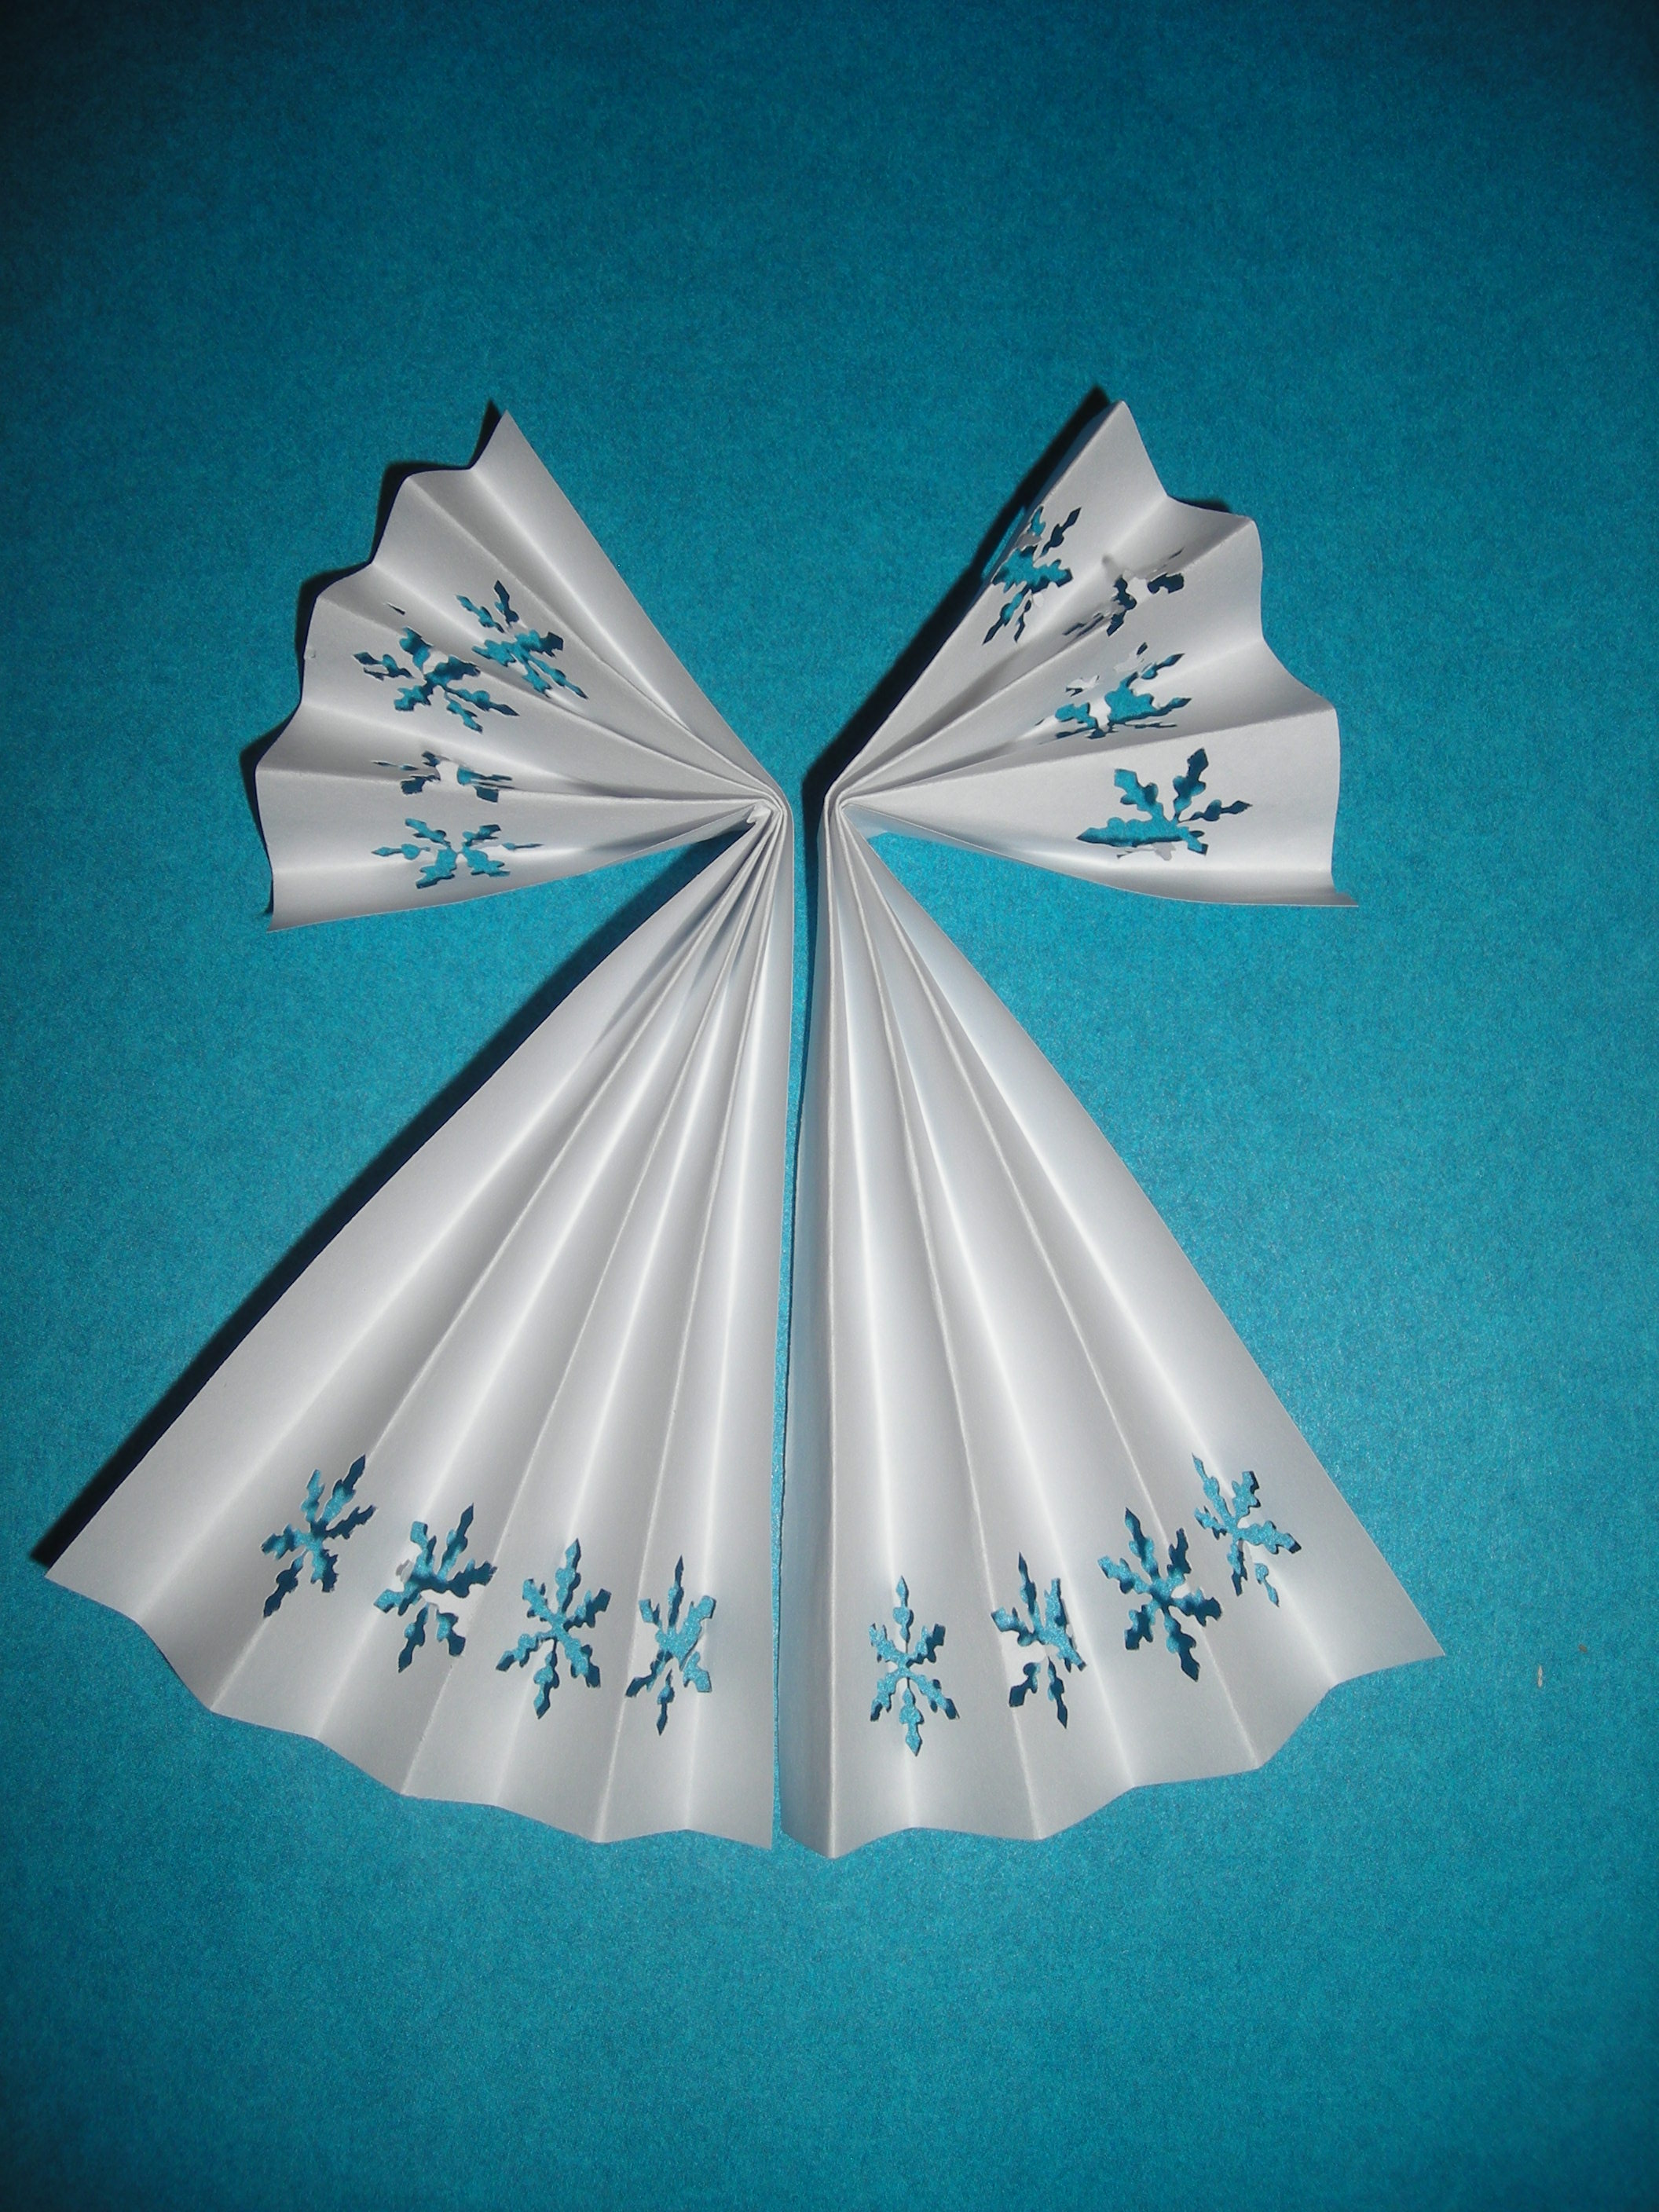 Мастер класс Рождественский ангел (пошаговая инструкция по изготовлению поделки из бумаги.